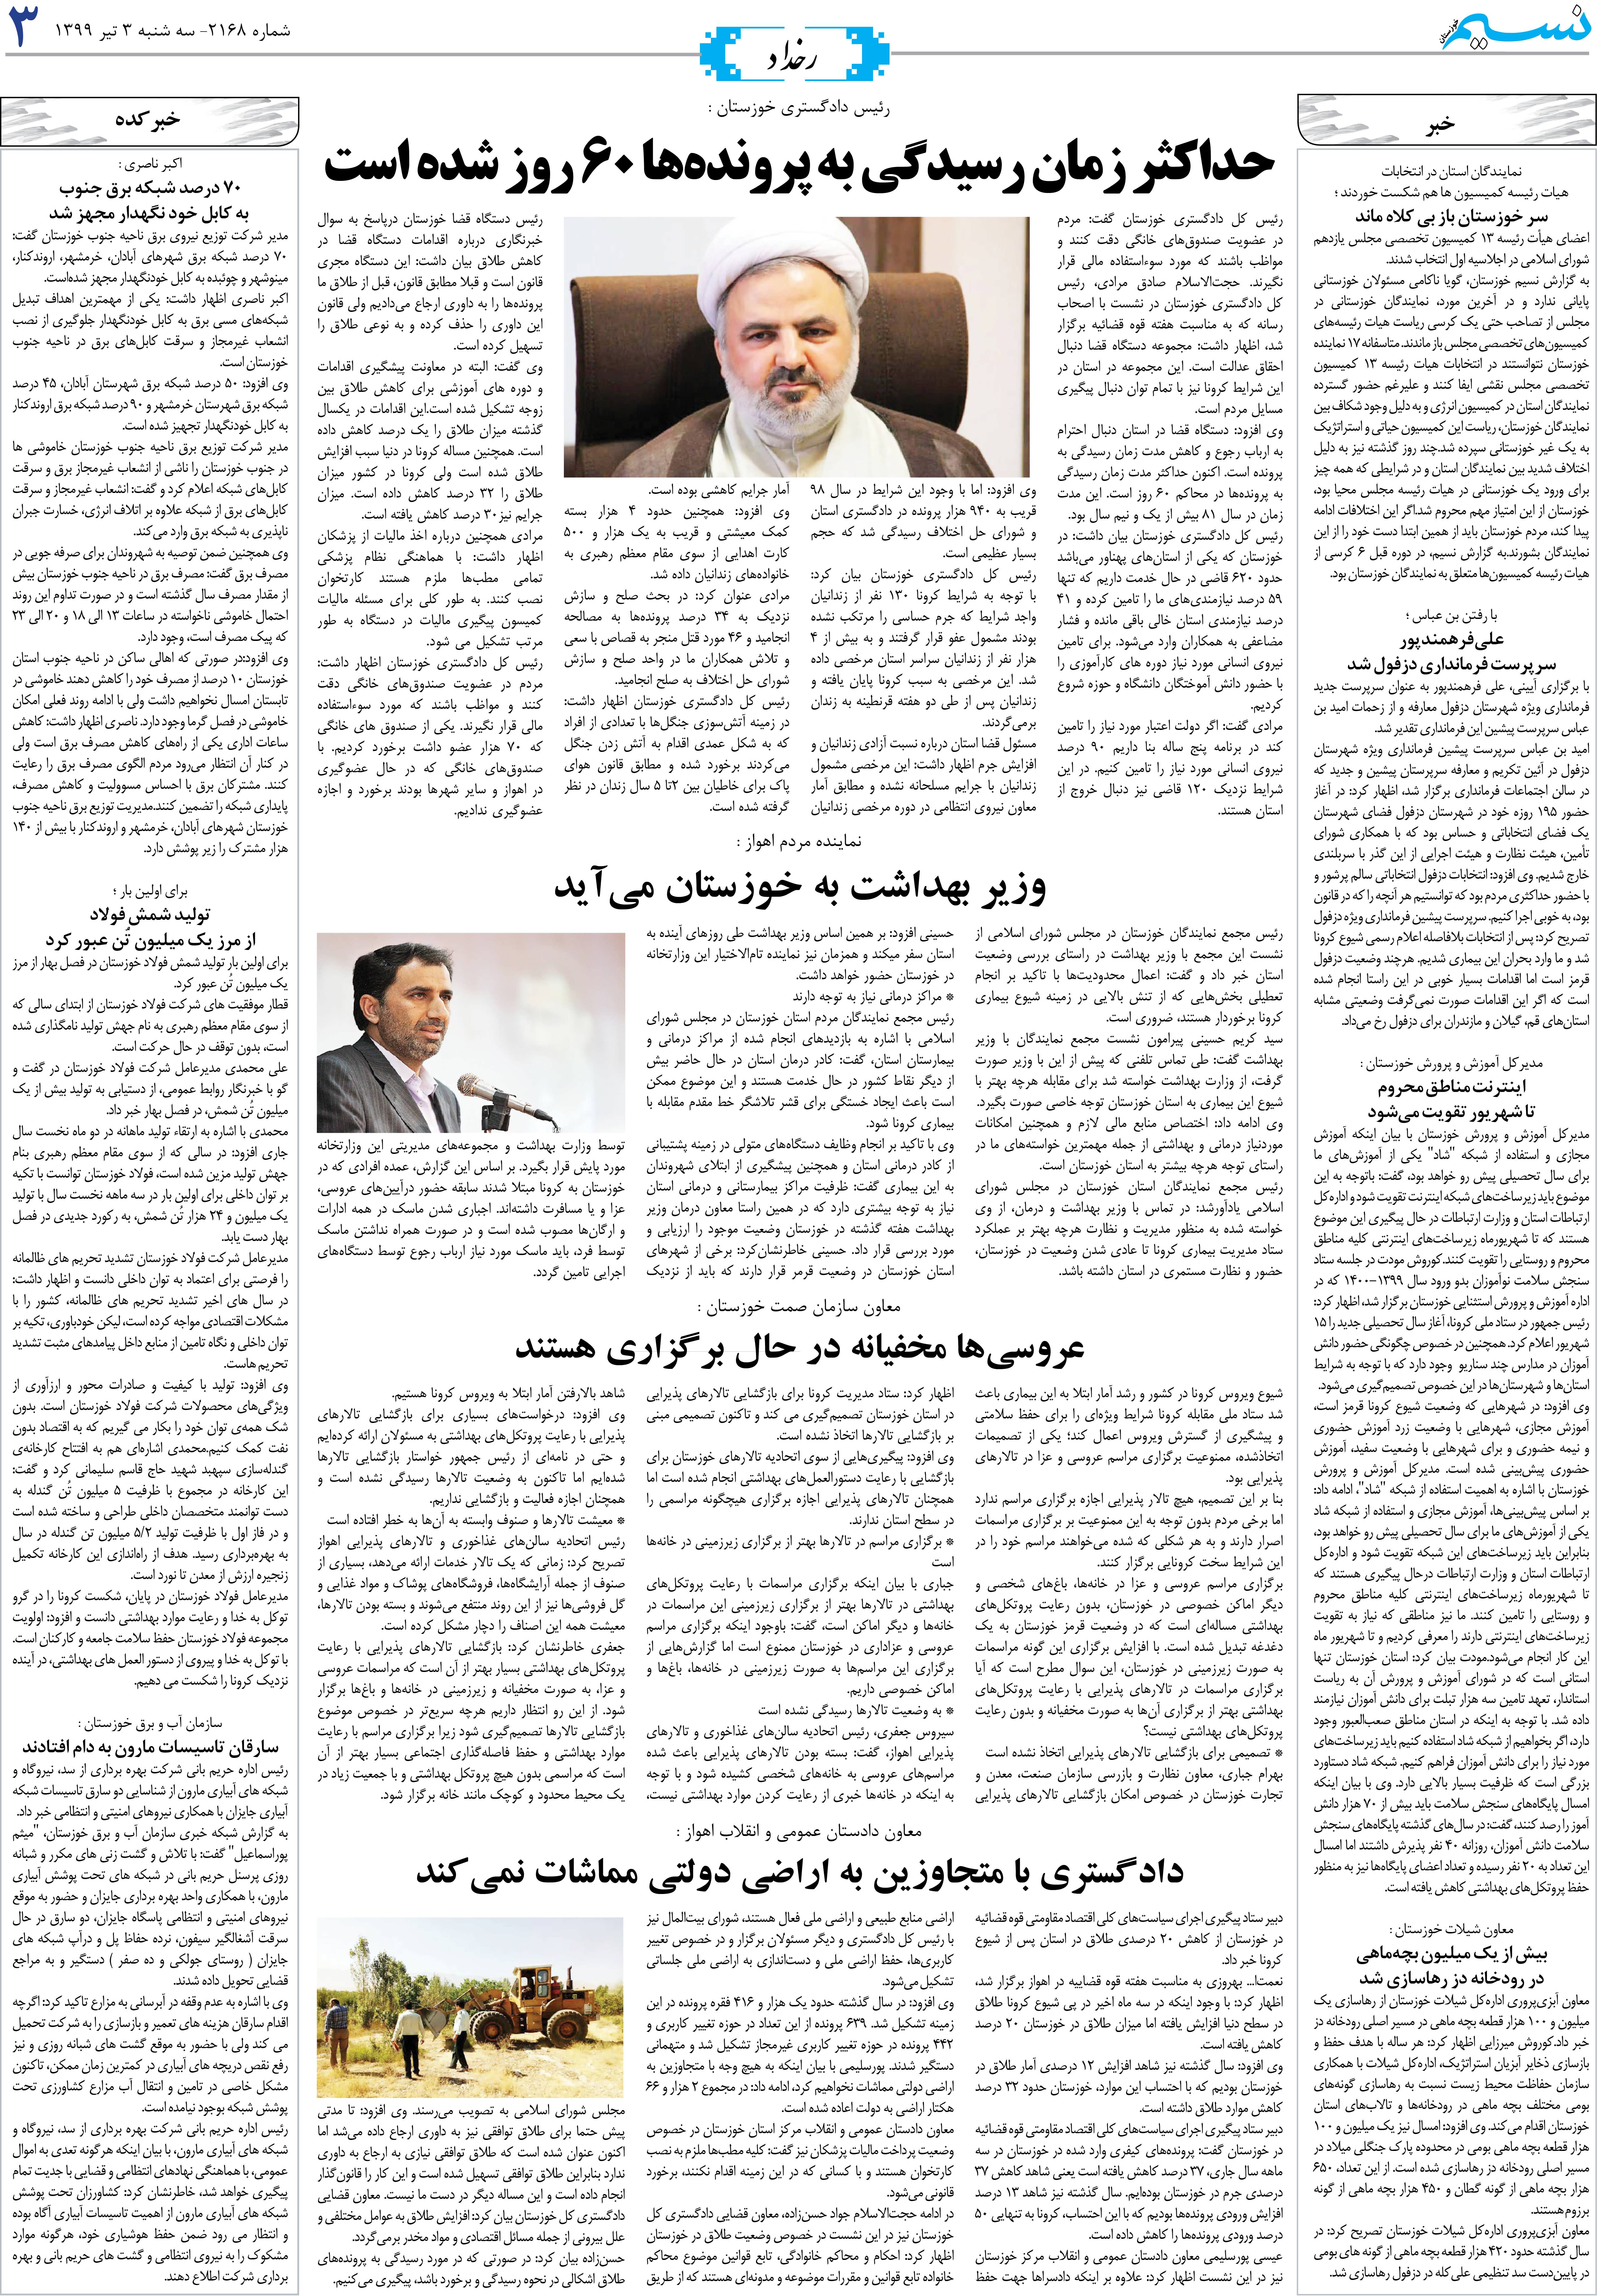 صفحه رخداد روزنامه نسیم شماره 2168